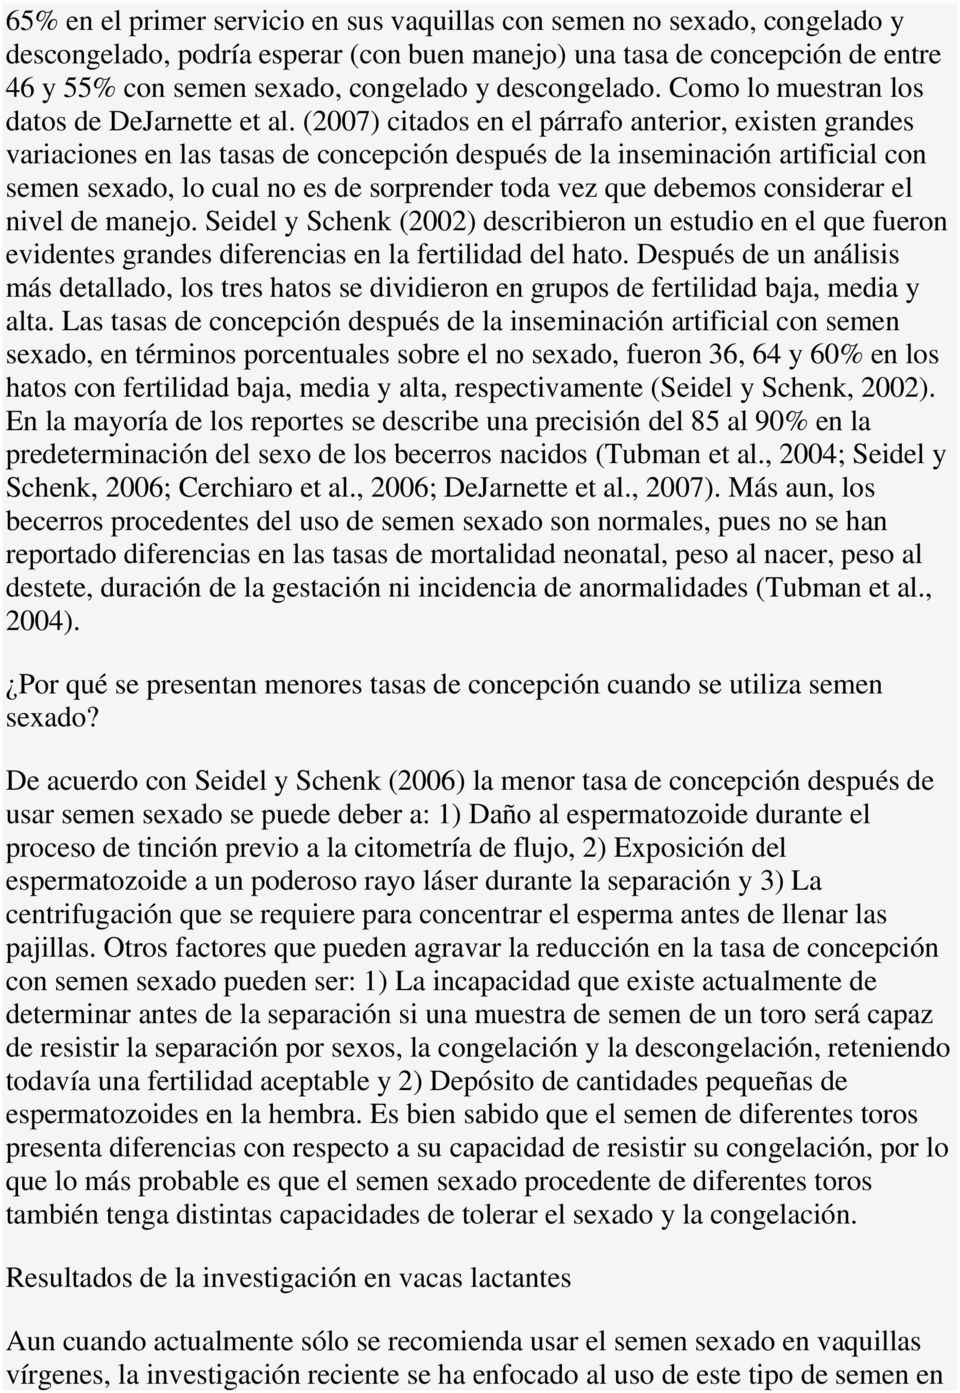 (2007) citados en el párrafo anterior, existen grandes variaciones en las tasas de concepción después de la inseminación artificial con semen sexado, lo cual no es de sorprender toda vez que debemos